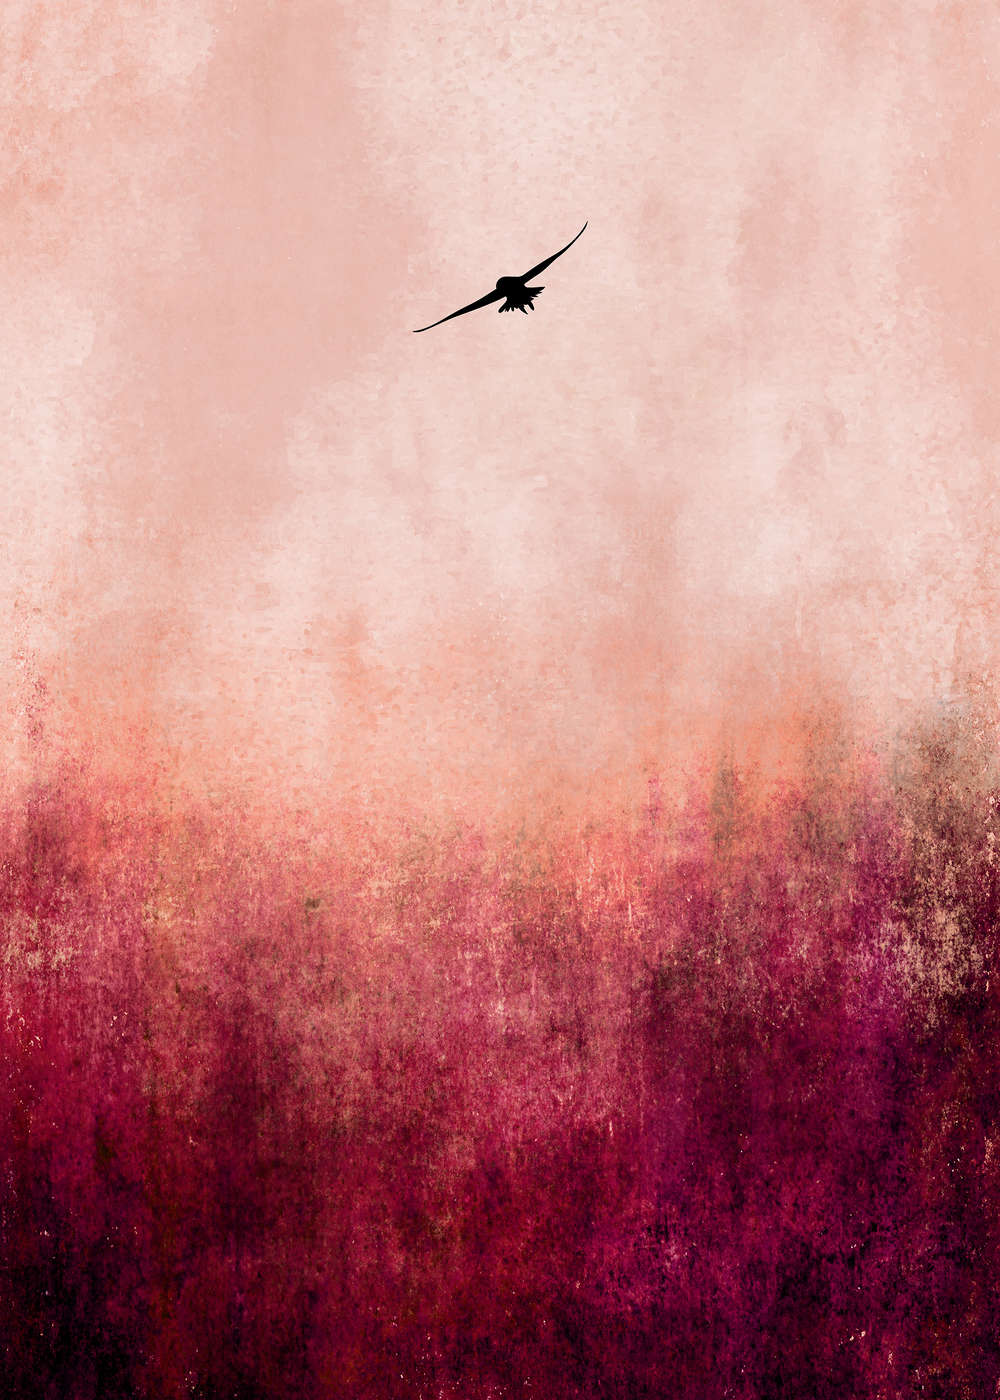             Muurschildering Zonsondergang met kleurverloop & vogelsilhouet
        